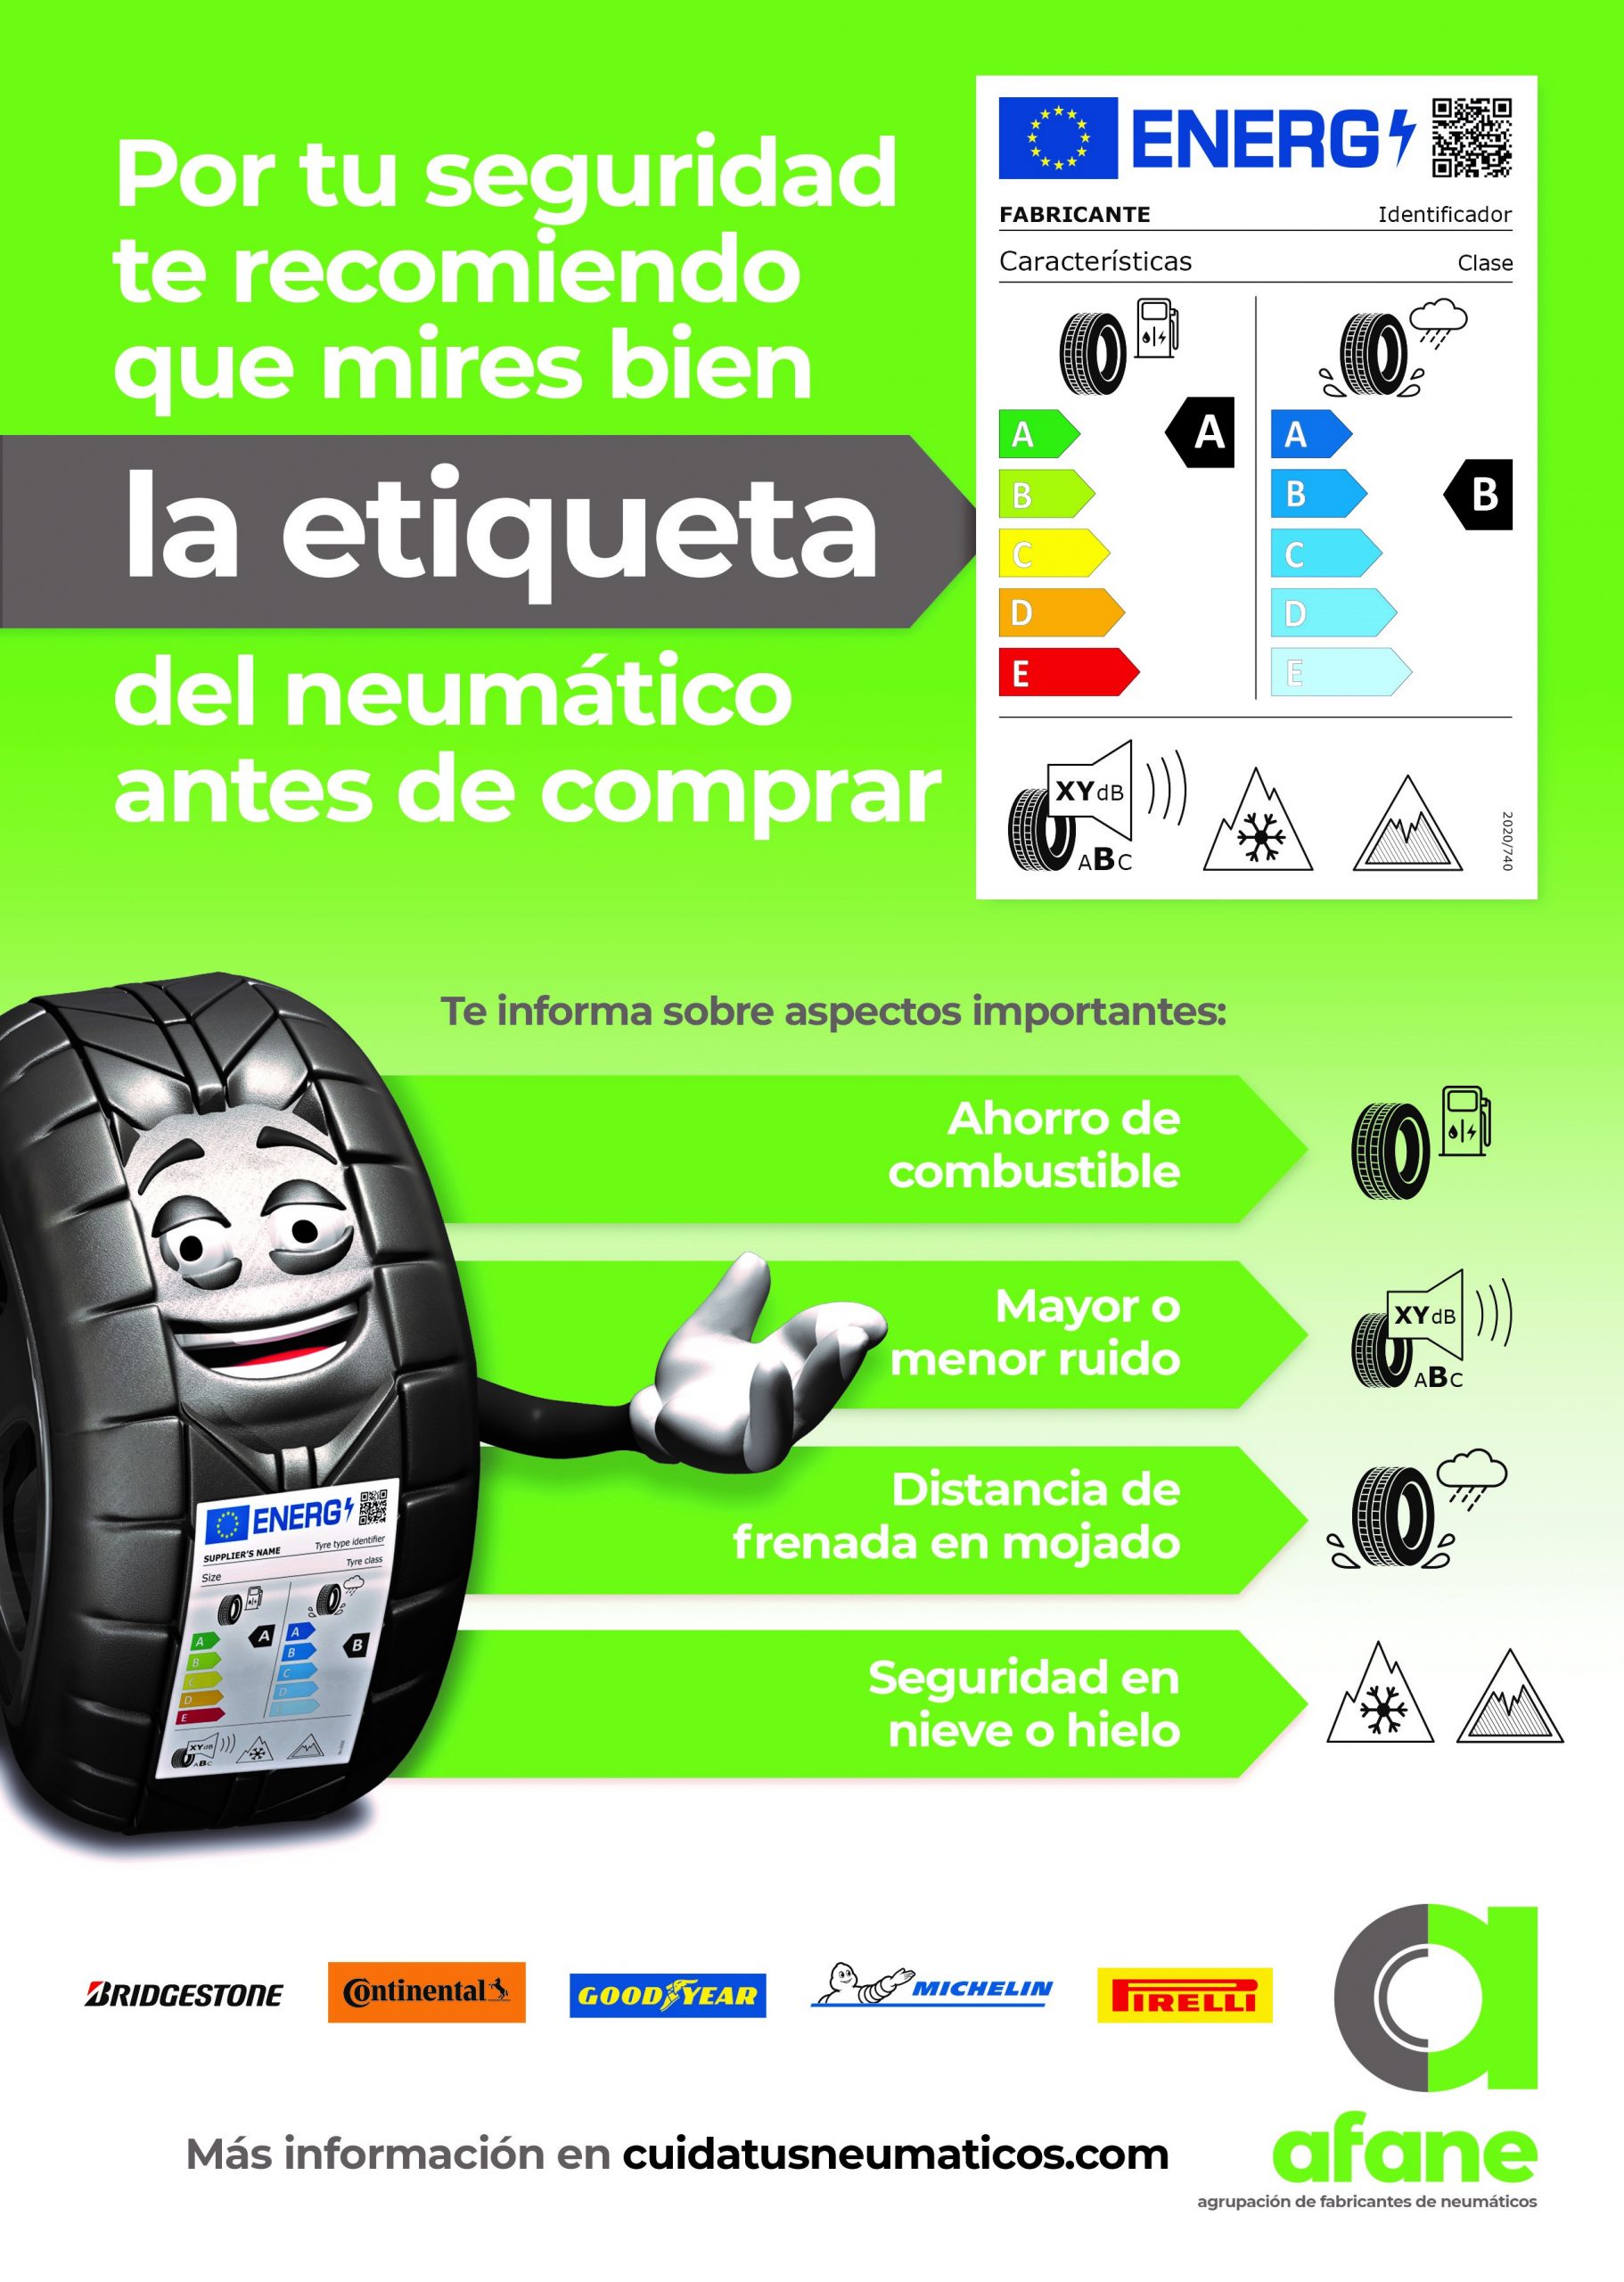 CETRAA - Campaña sobre la nueva etiqueta del neumático